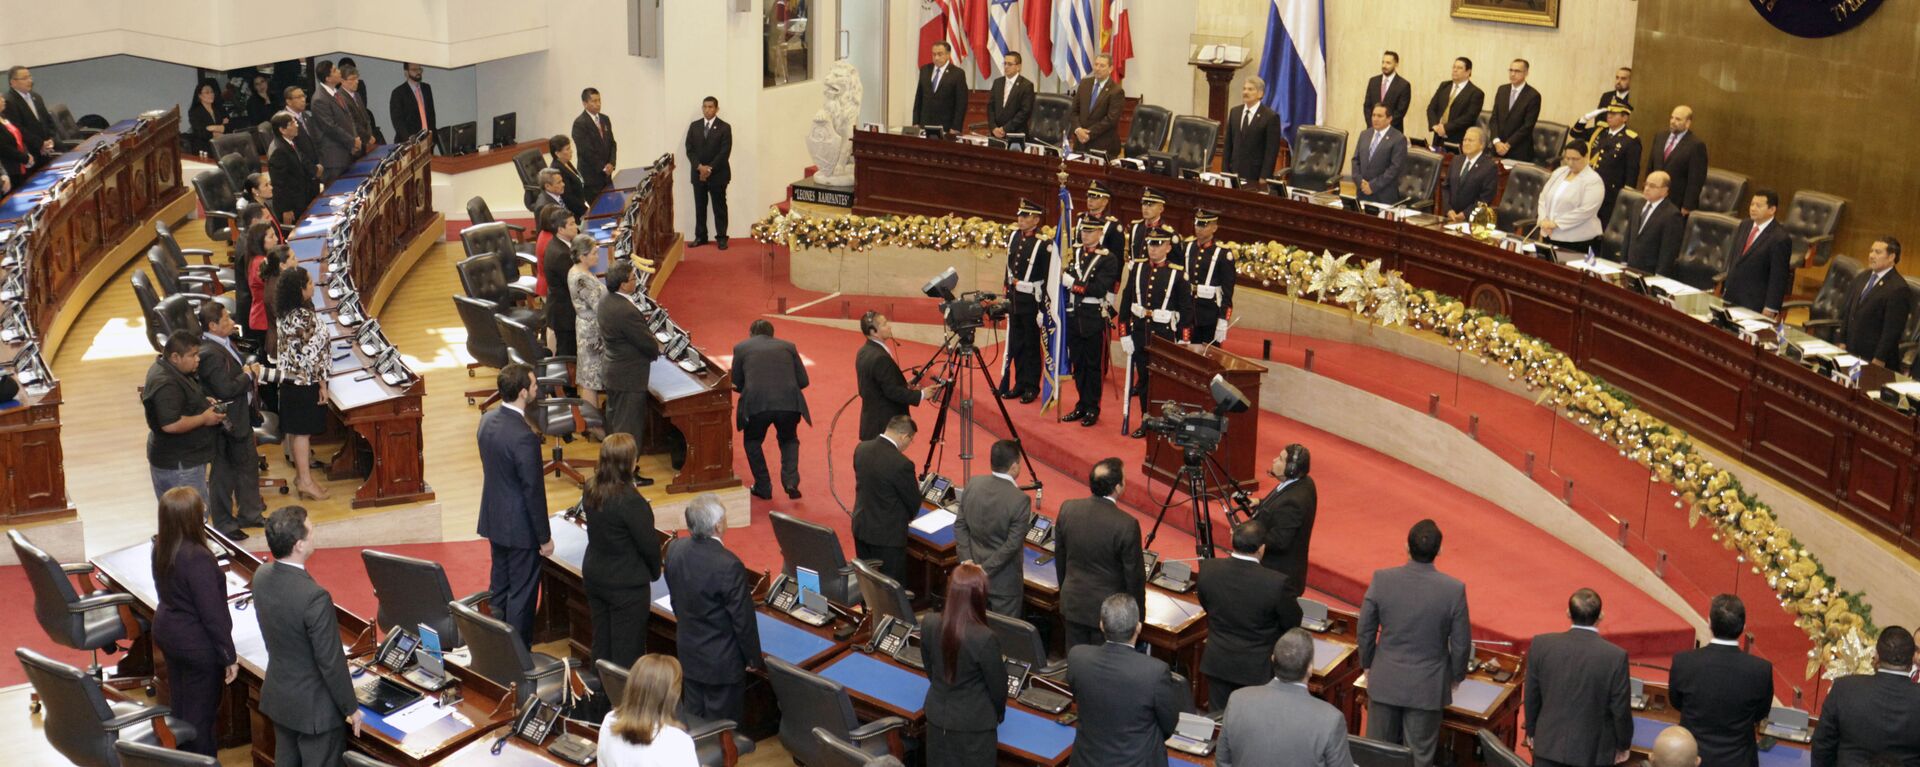 Salón de sesiones de la Asamblea Legislativa (parlamento) de El Salvador (Archivo) - Sputnik Mundo, 1920, 12.03.2021